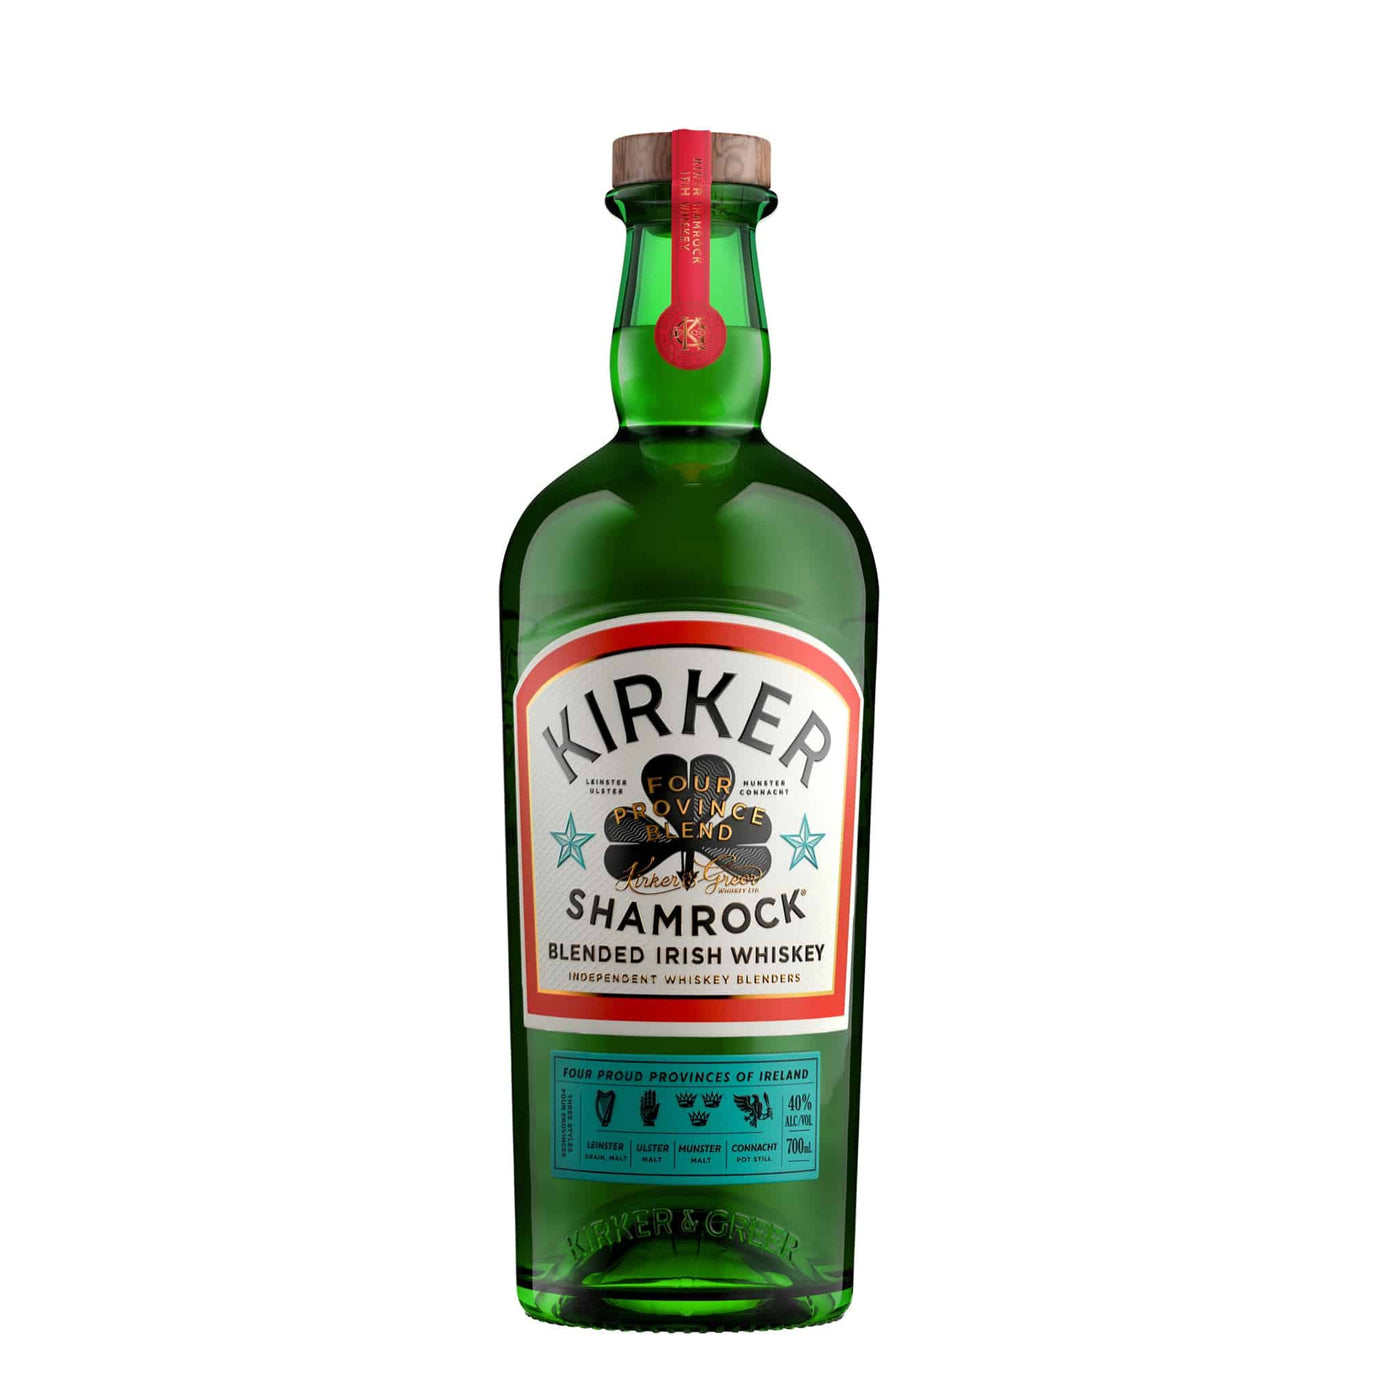 Kirker Shamrock Whiskey